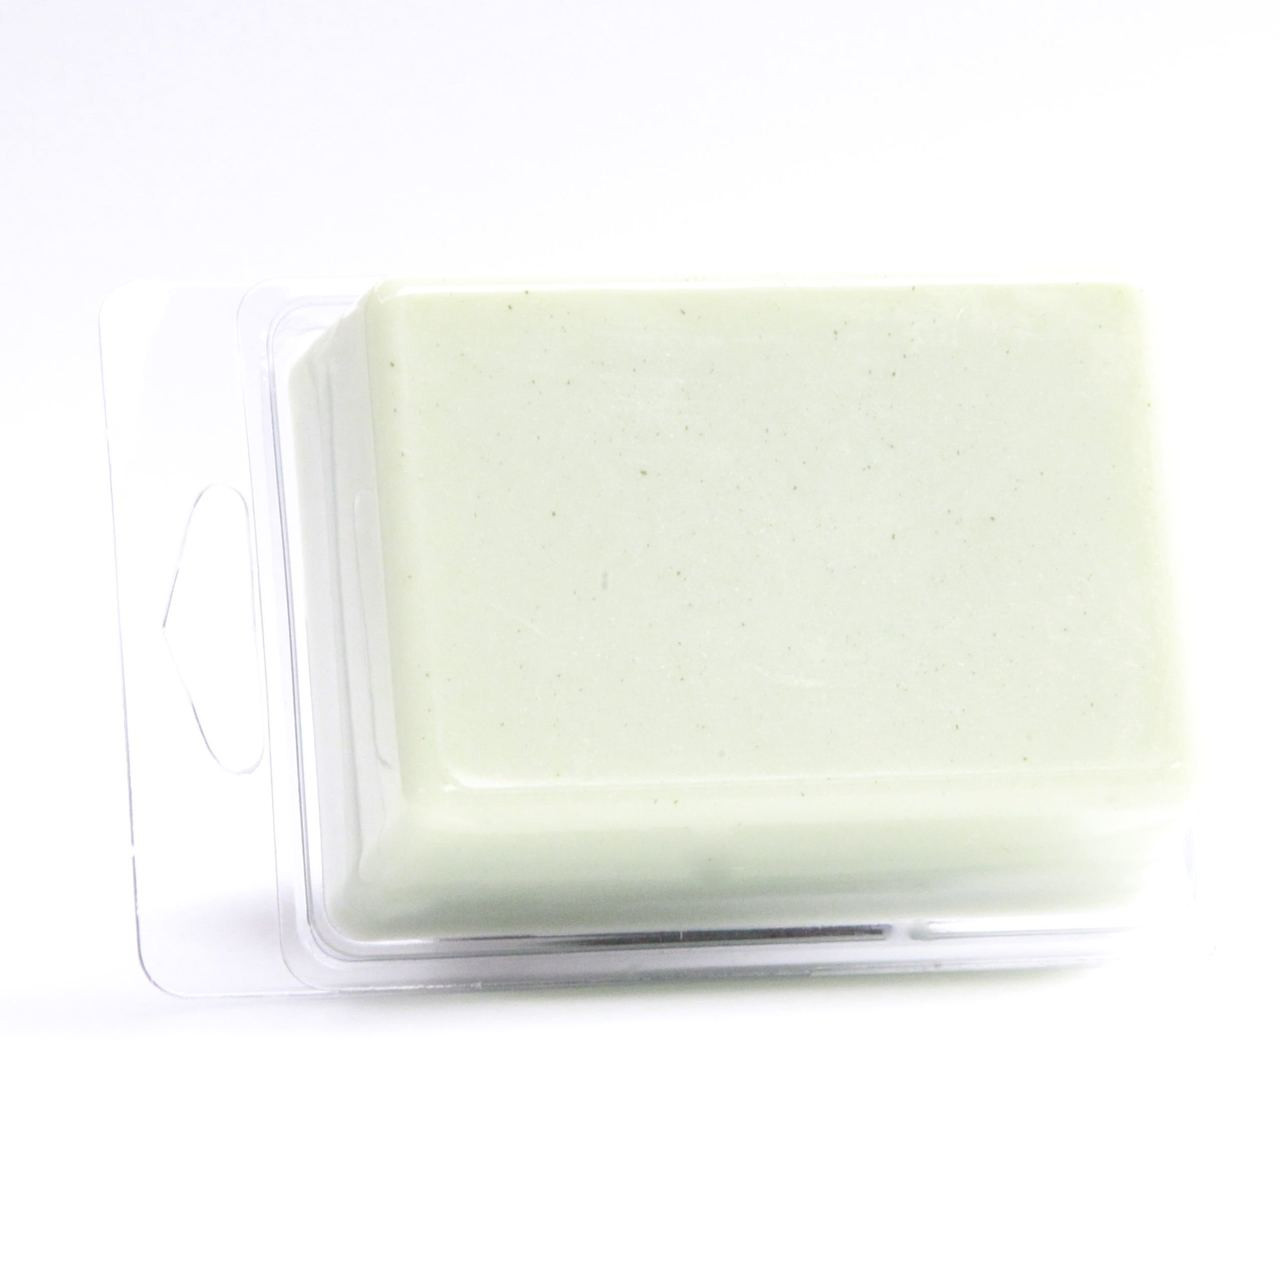 Soap Fragrance Oils - Make Your Soap